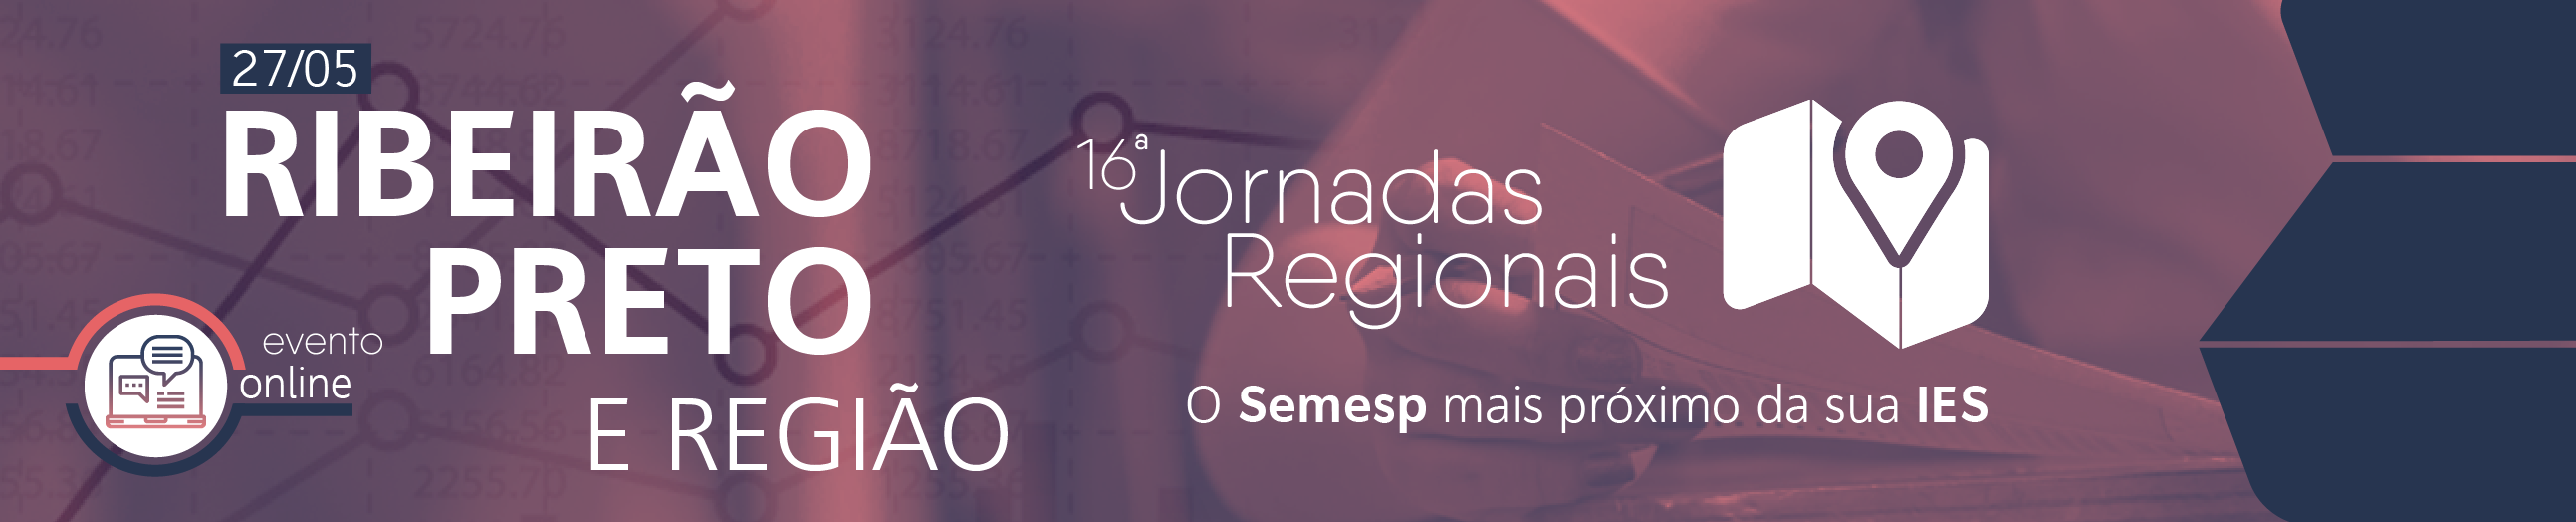 Jornadas Regionais | 16ª Edição - Ribeirão Preto